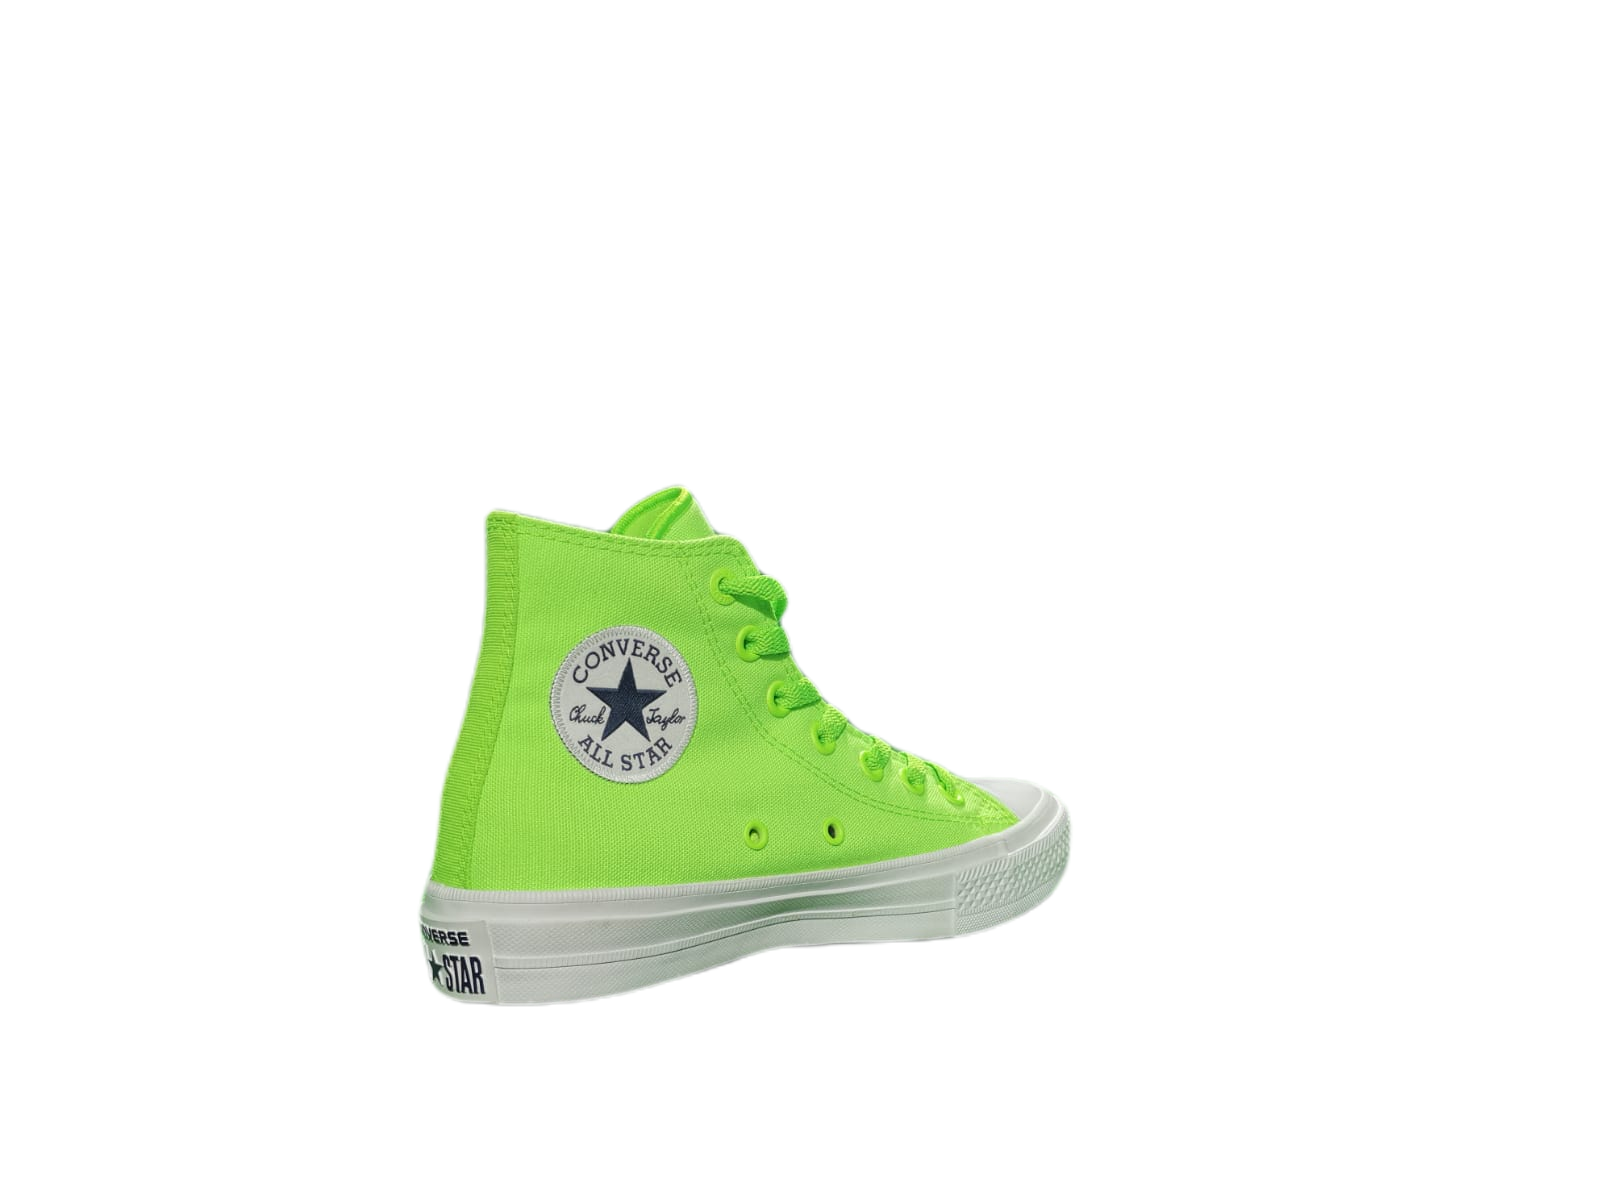 Scarpa Converse CTAS ll Hi Verde Fluo Fosforescente Donna Uomo Sneakers  151118C | eBay